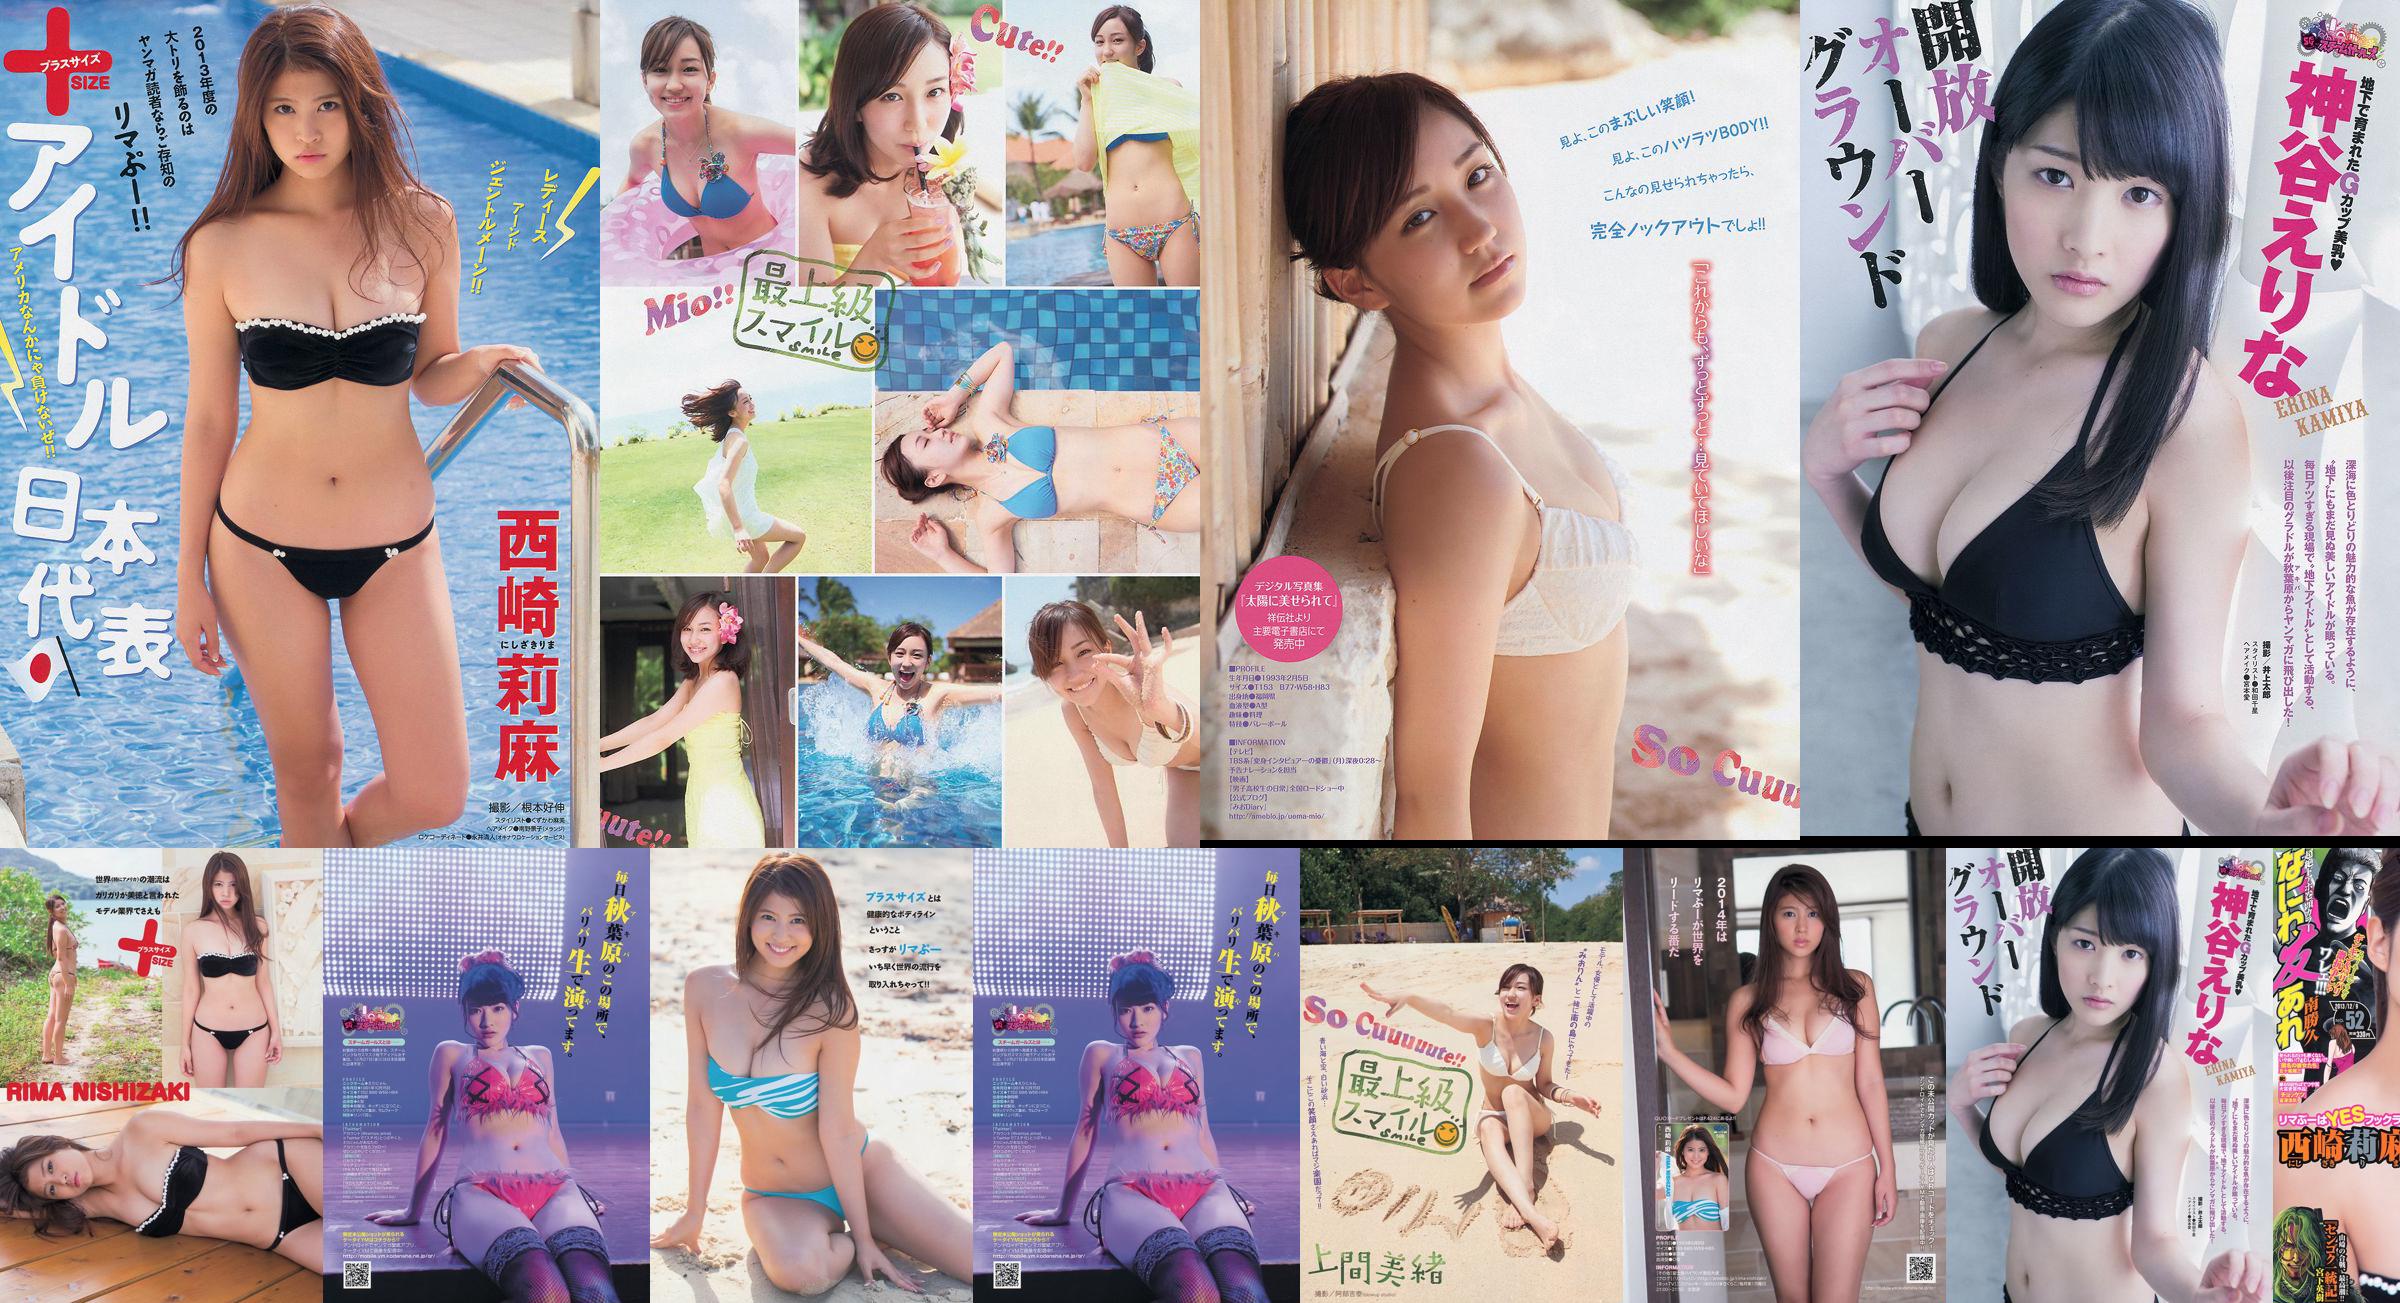 [Majalah Muda] Rima Nishizaki Mio Uema Erina Kamiya 2013 No.52 Foto Moshi No.df8a70 Halaman 6